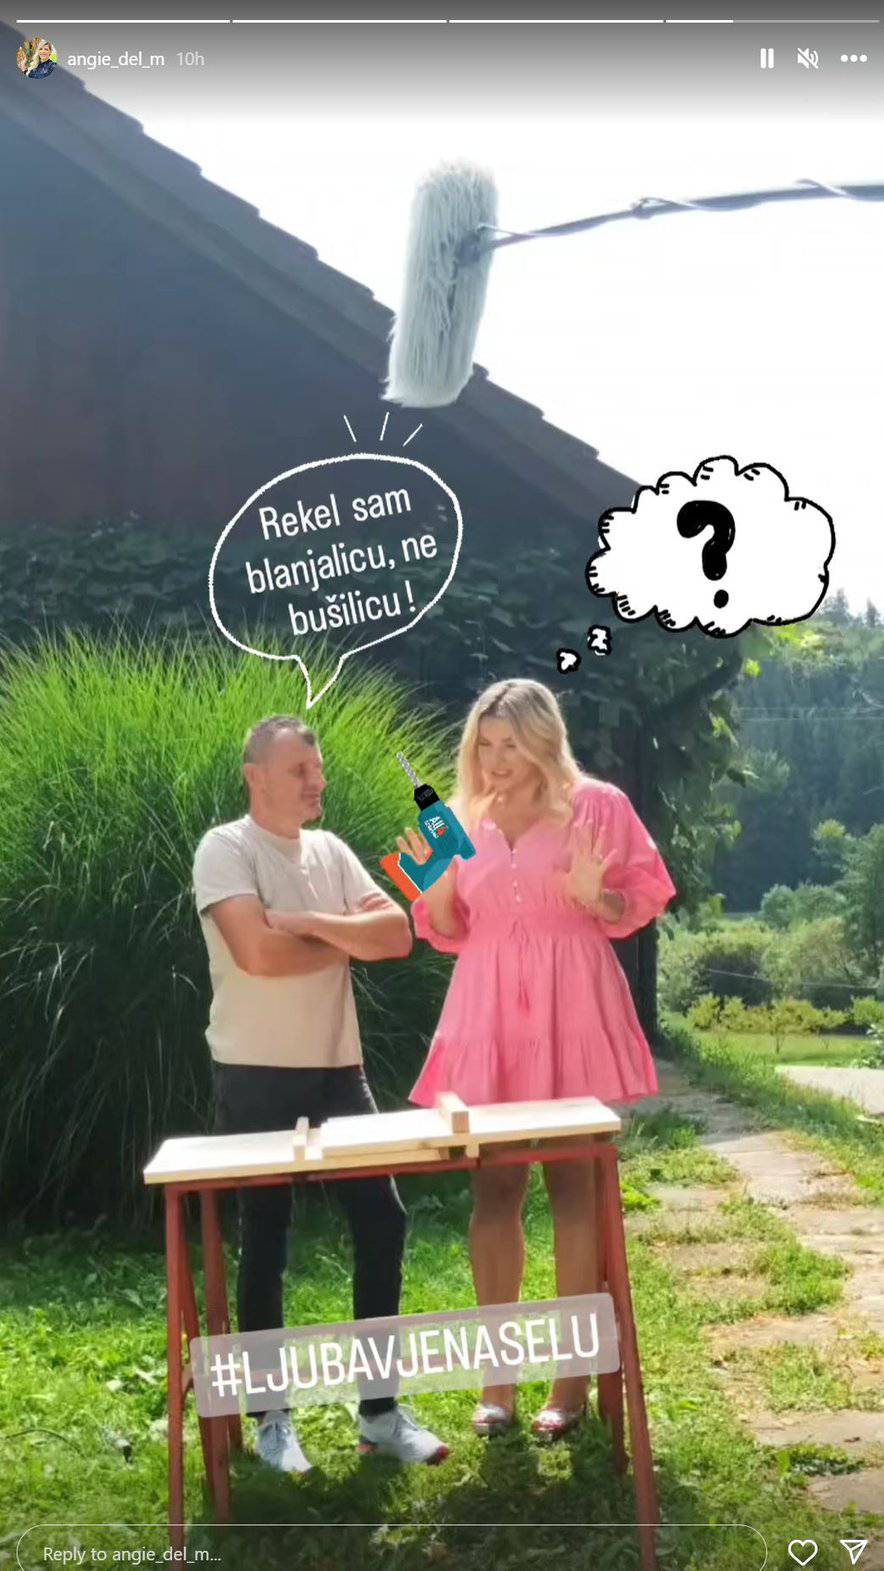 Voditeljica showa 'Ljubav je na selu' postala je teta prvi put, a sada pozirala u rozom: 'Barbie'